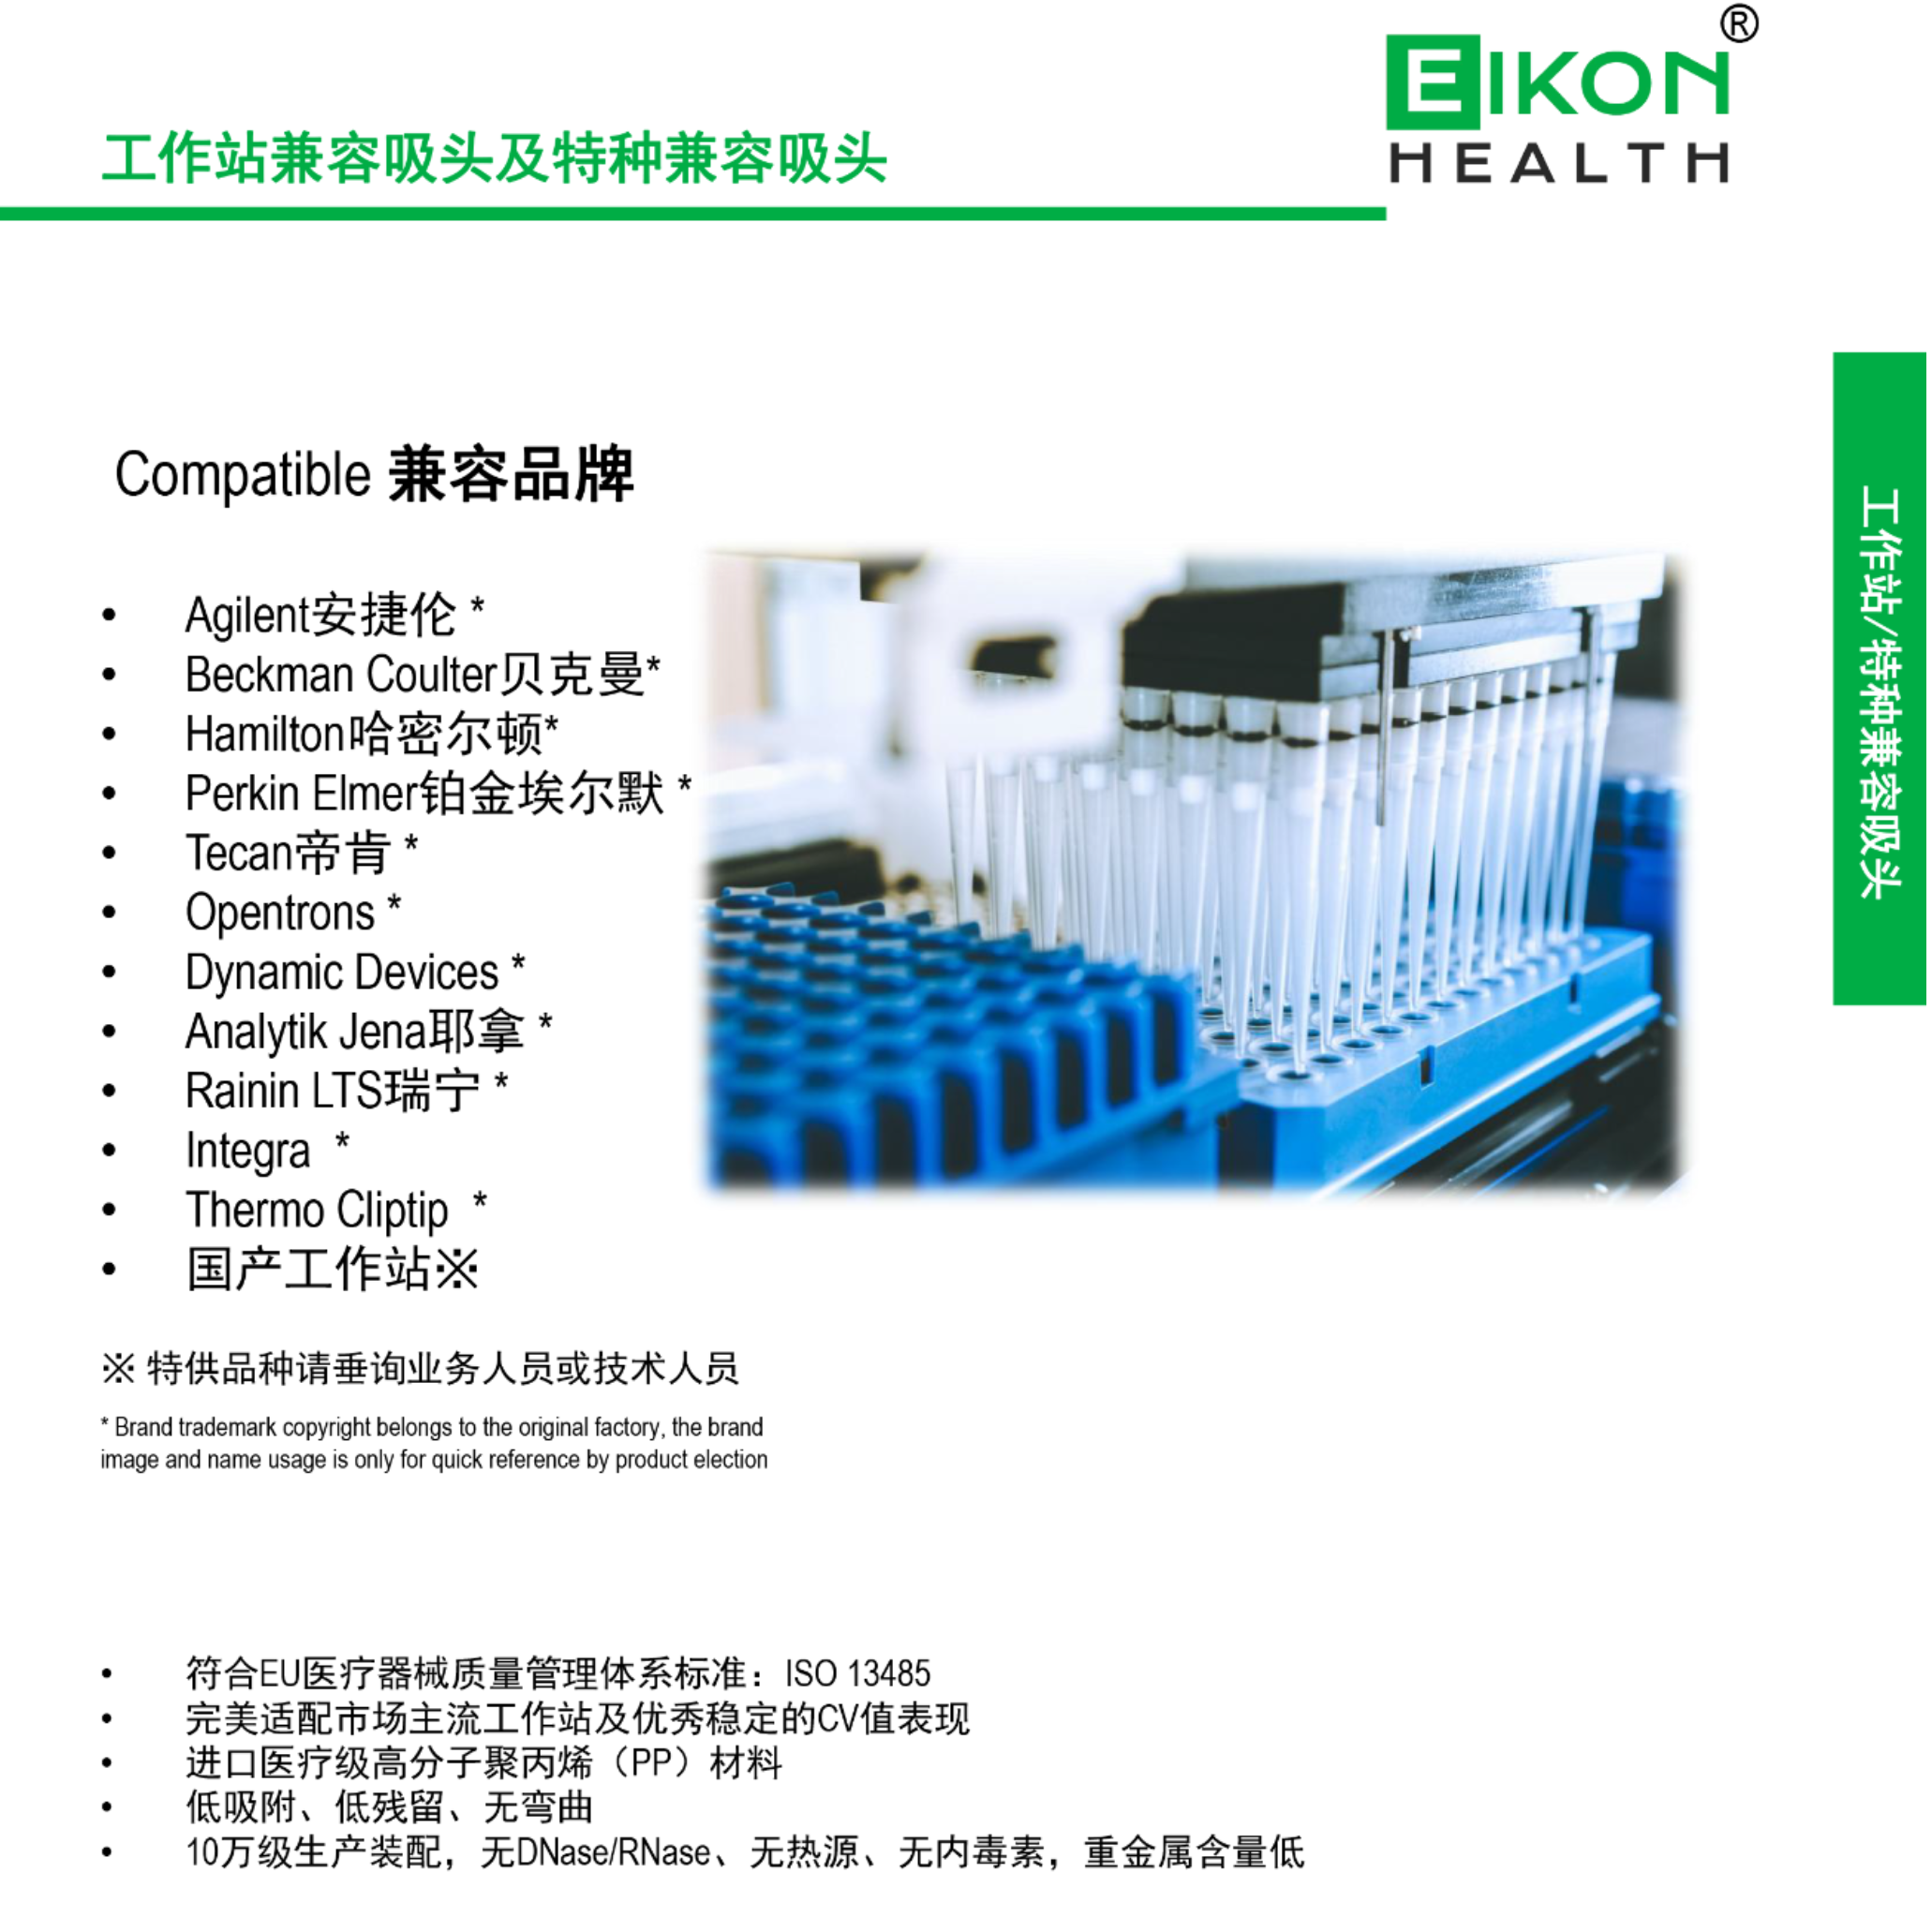 Eikon爱康高品质兼容耗材，进口移液器/工作站吸头、离心管、冻存管、深孔板、移液管以及-86℃/-196℃超低温RFID标签